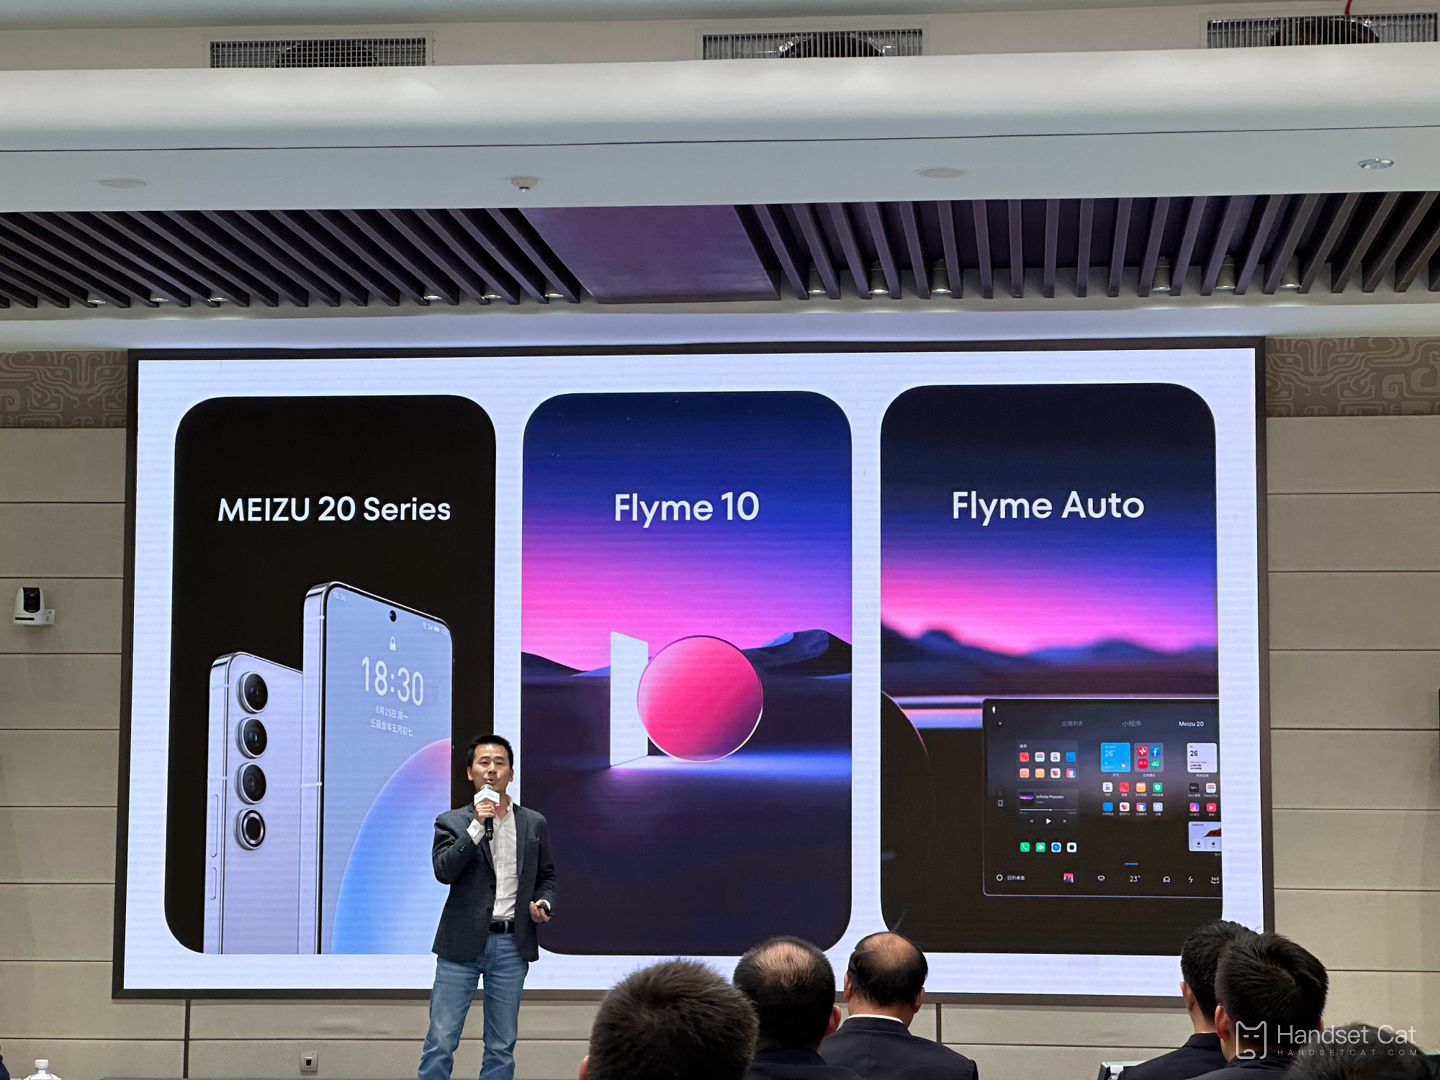 โทรศัพท์มือถือ Meizu 20 Series ประกาศเปิดตัวอย่างเป็นทางการในวันที่ 30 มีนาคมนี้ พร้อมด้วยระบบ Flyme 10 ใหม่